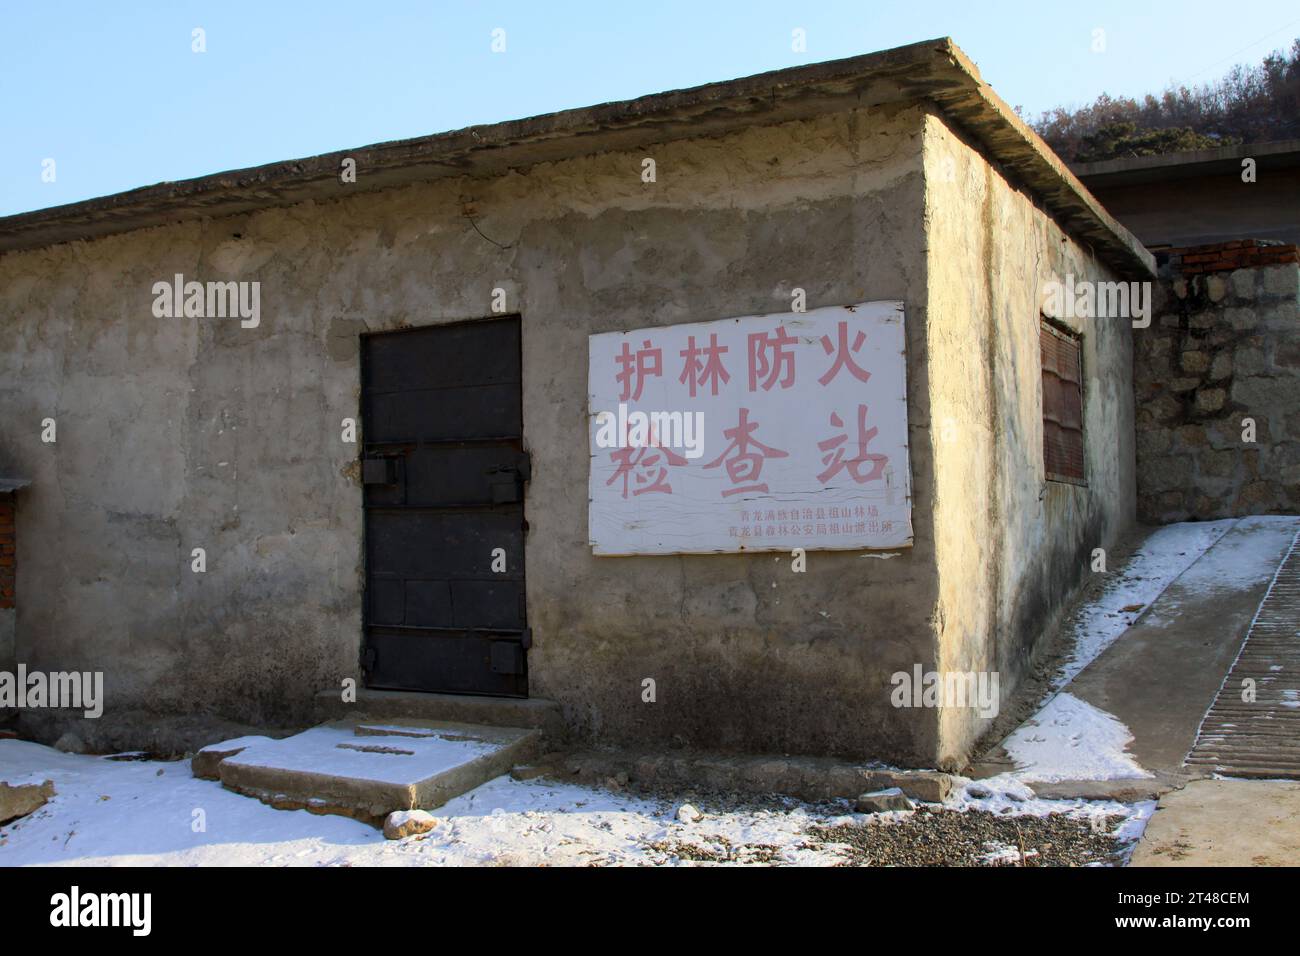 QINGLONG - 18. JANUAR: Die Worte „Forest Fire Prevention Checkpoint“, geschrieben an der Wand in einem kleinen Bergdorf, am 18. Januar 2014, Qinglong, h Stockfoto